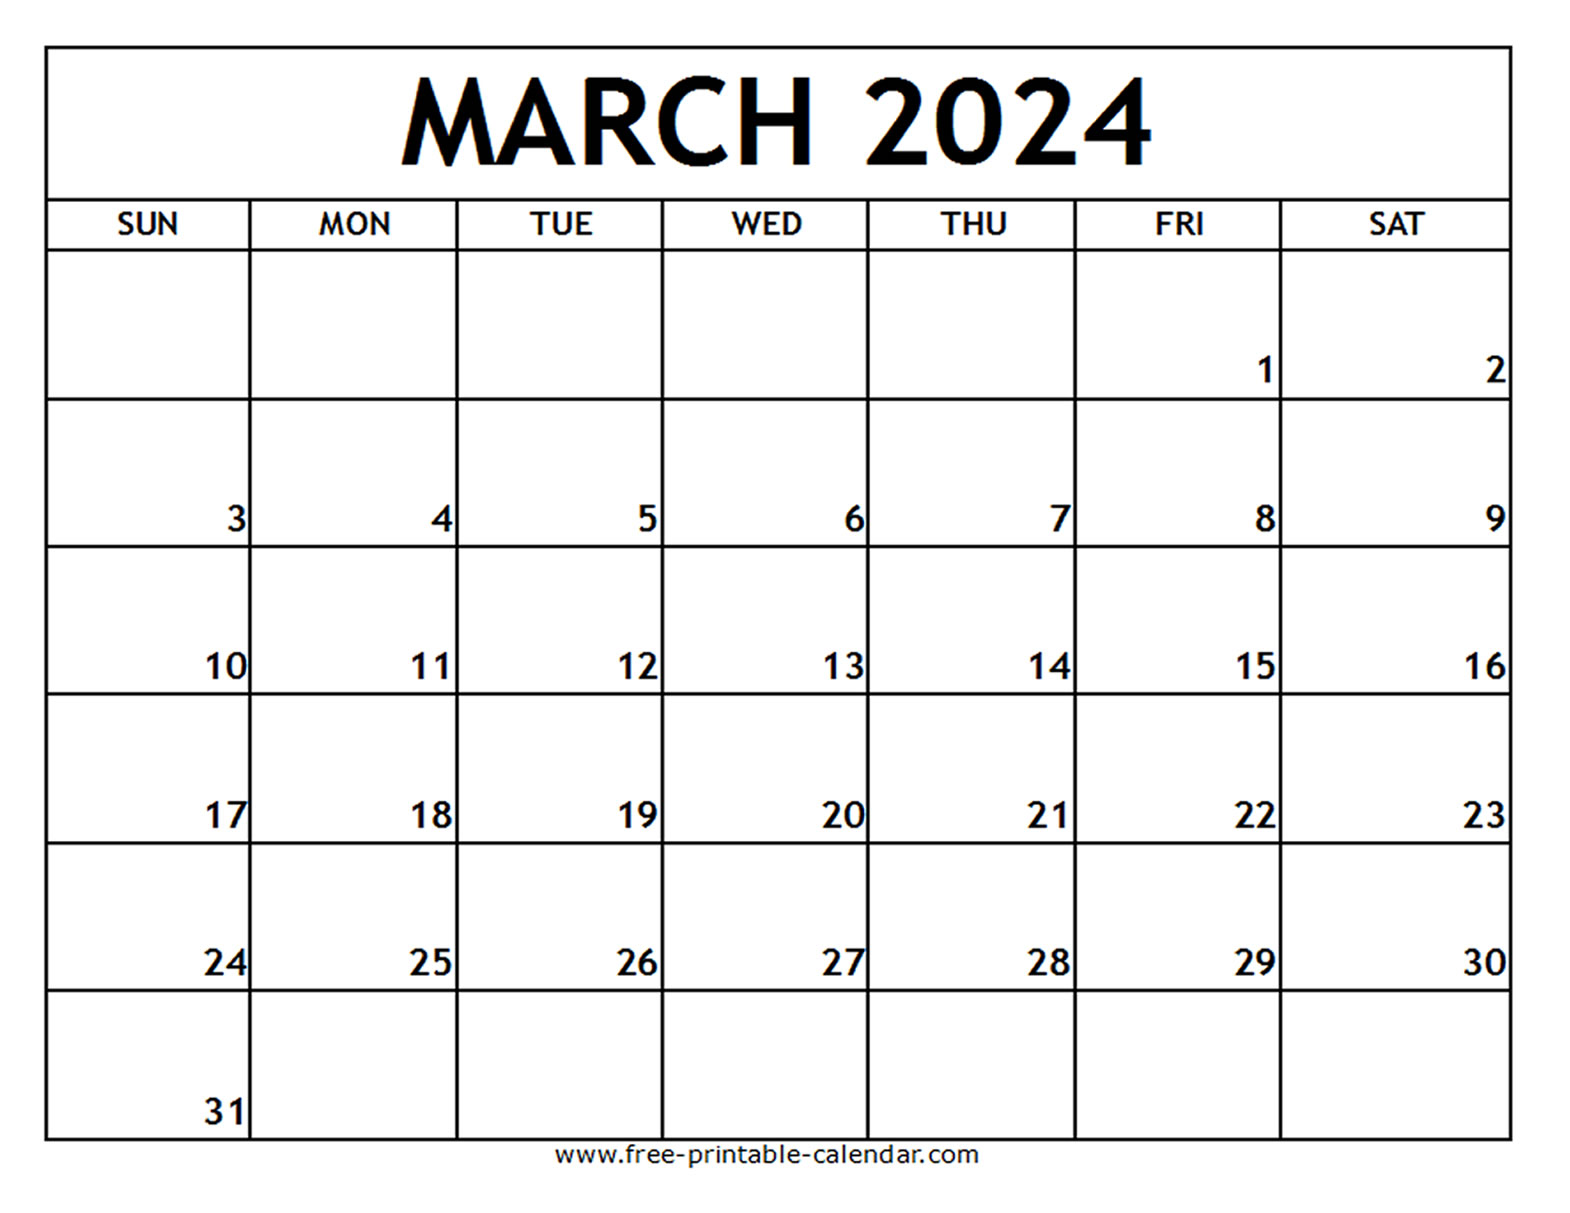 March 2024 Printable Calendar - Free-printable-calendar.com